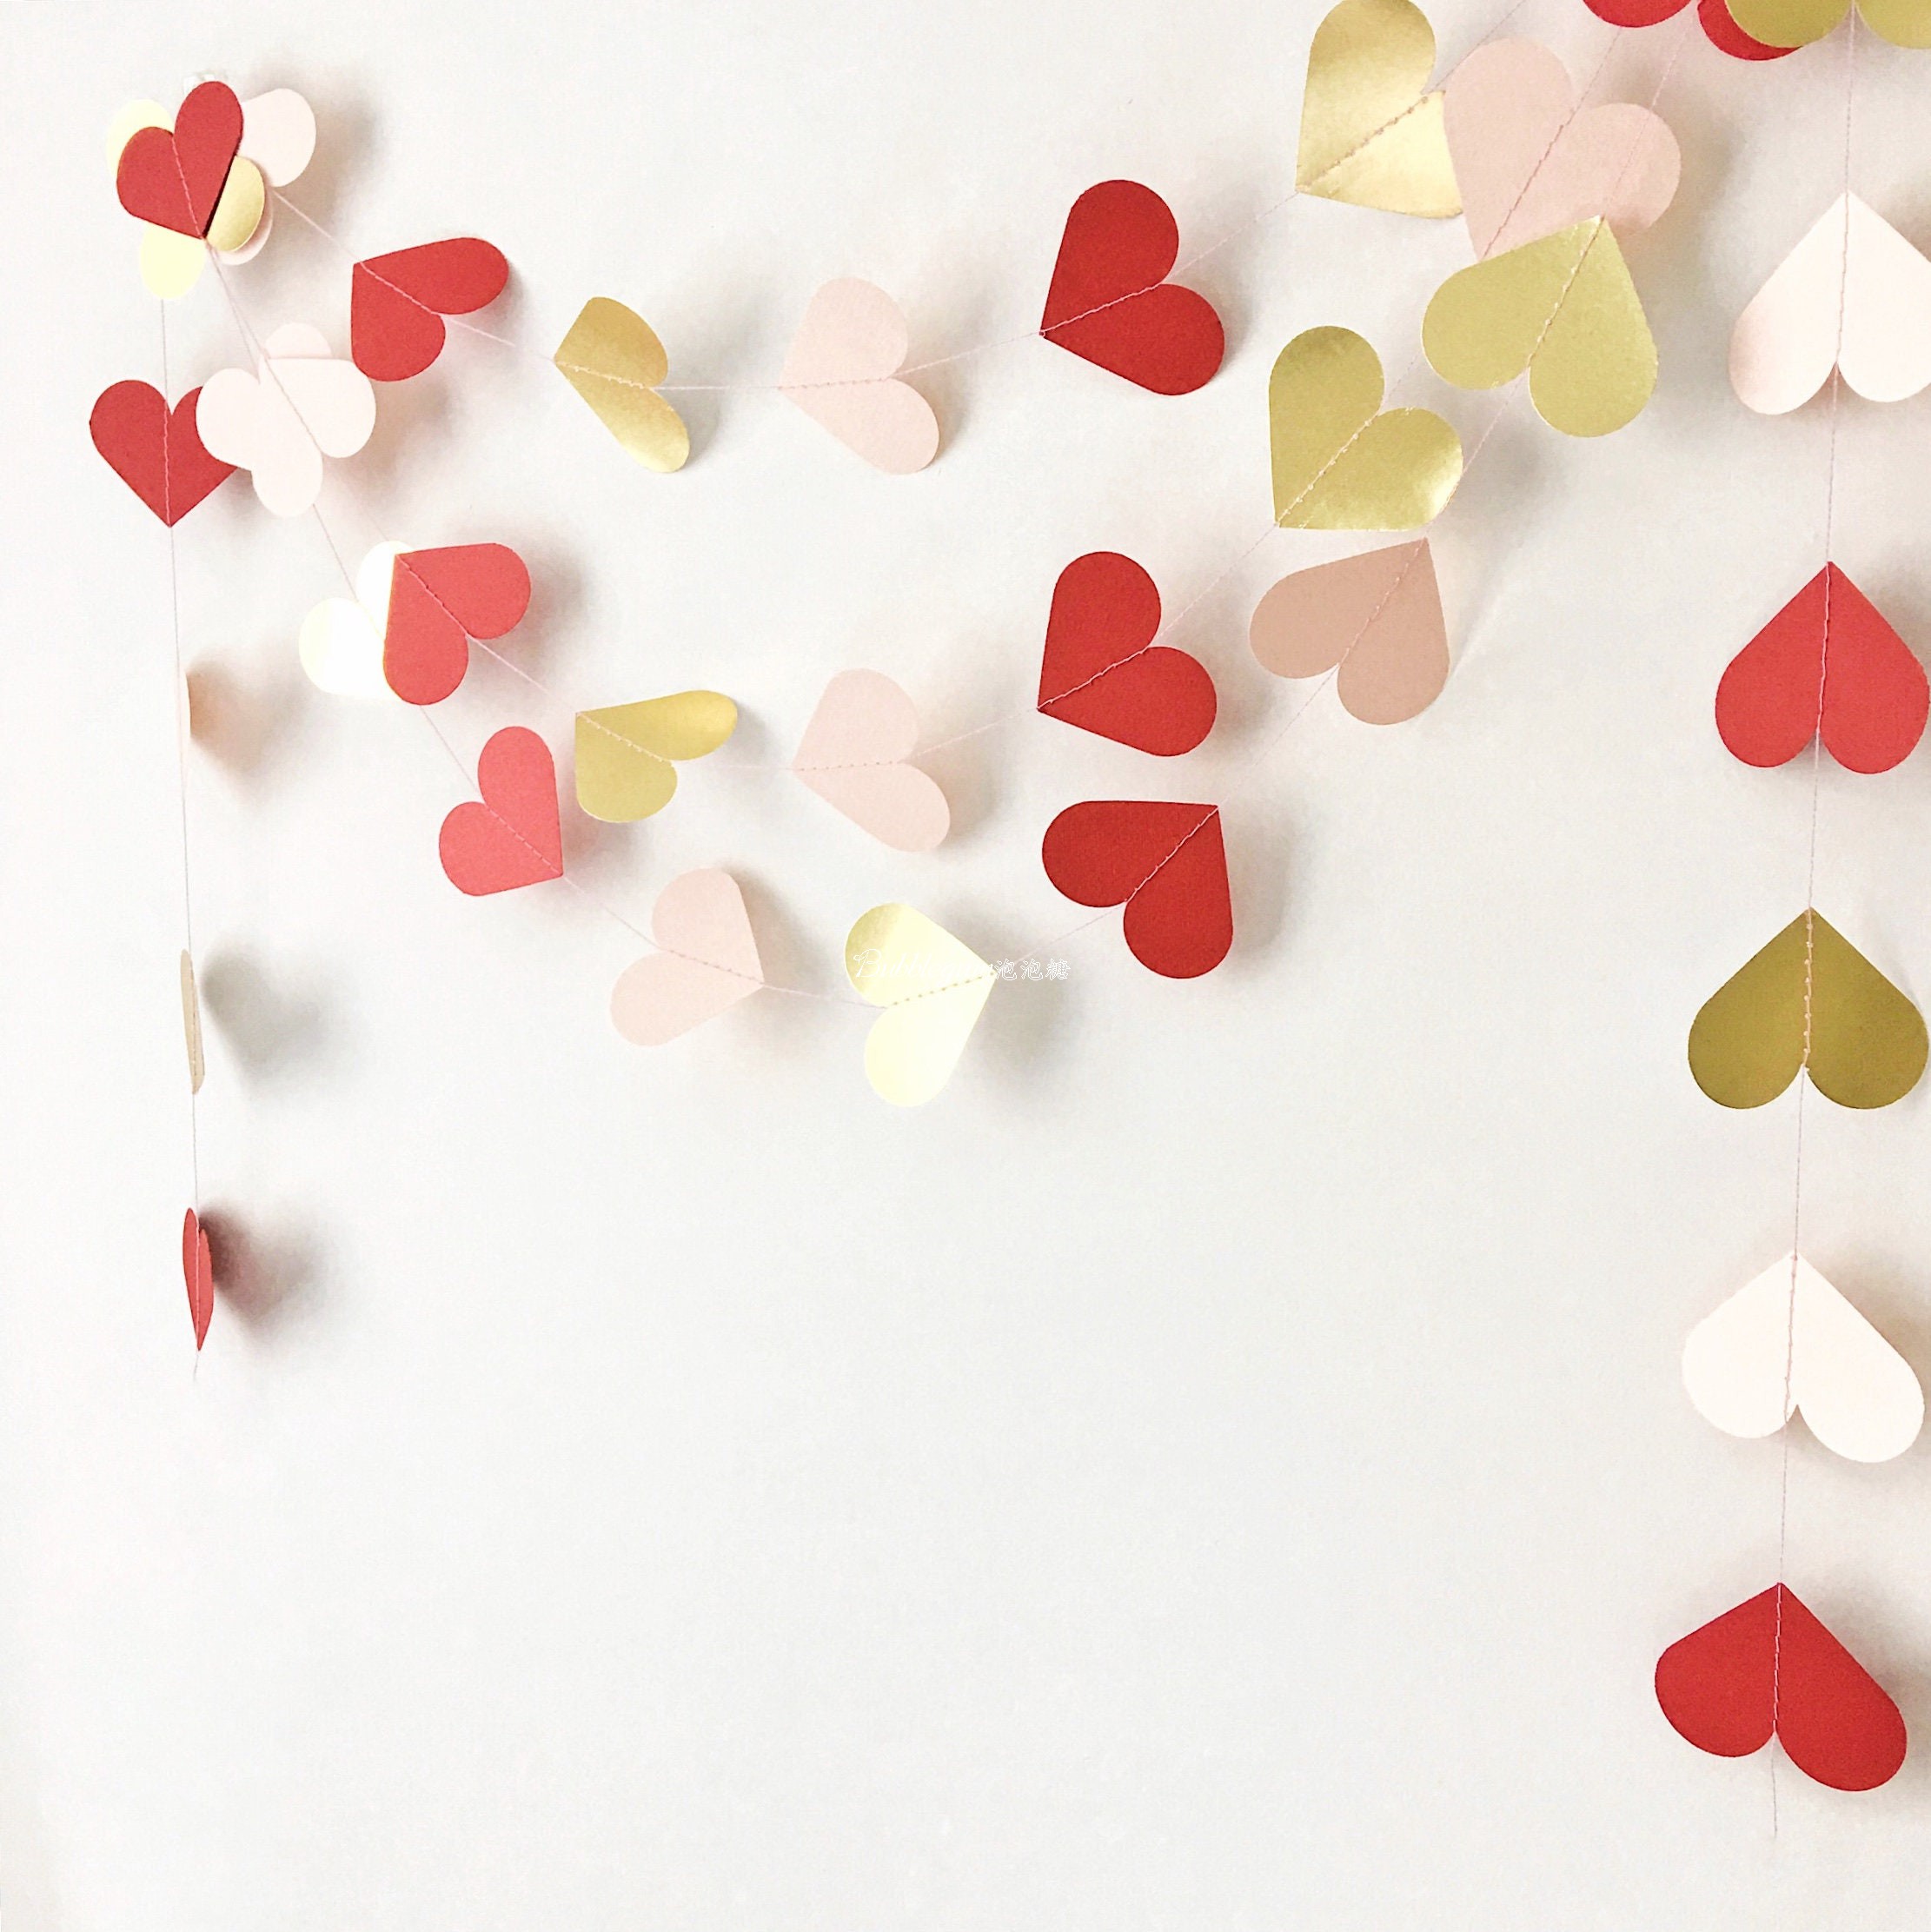 節慶裝飾拉花紙串用品心形圓形紙串營造歡樂氣氛